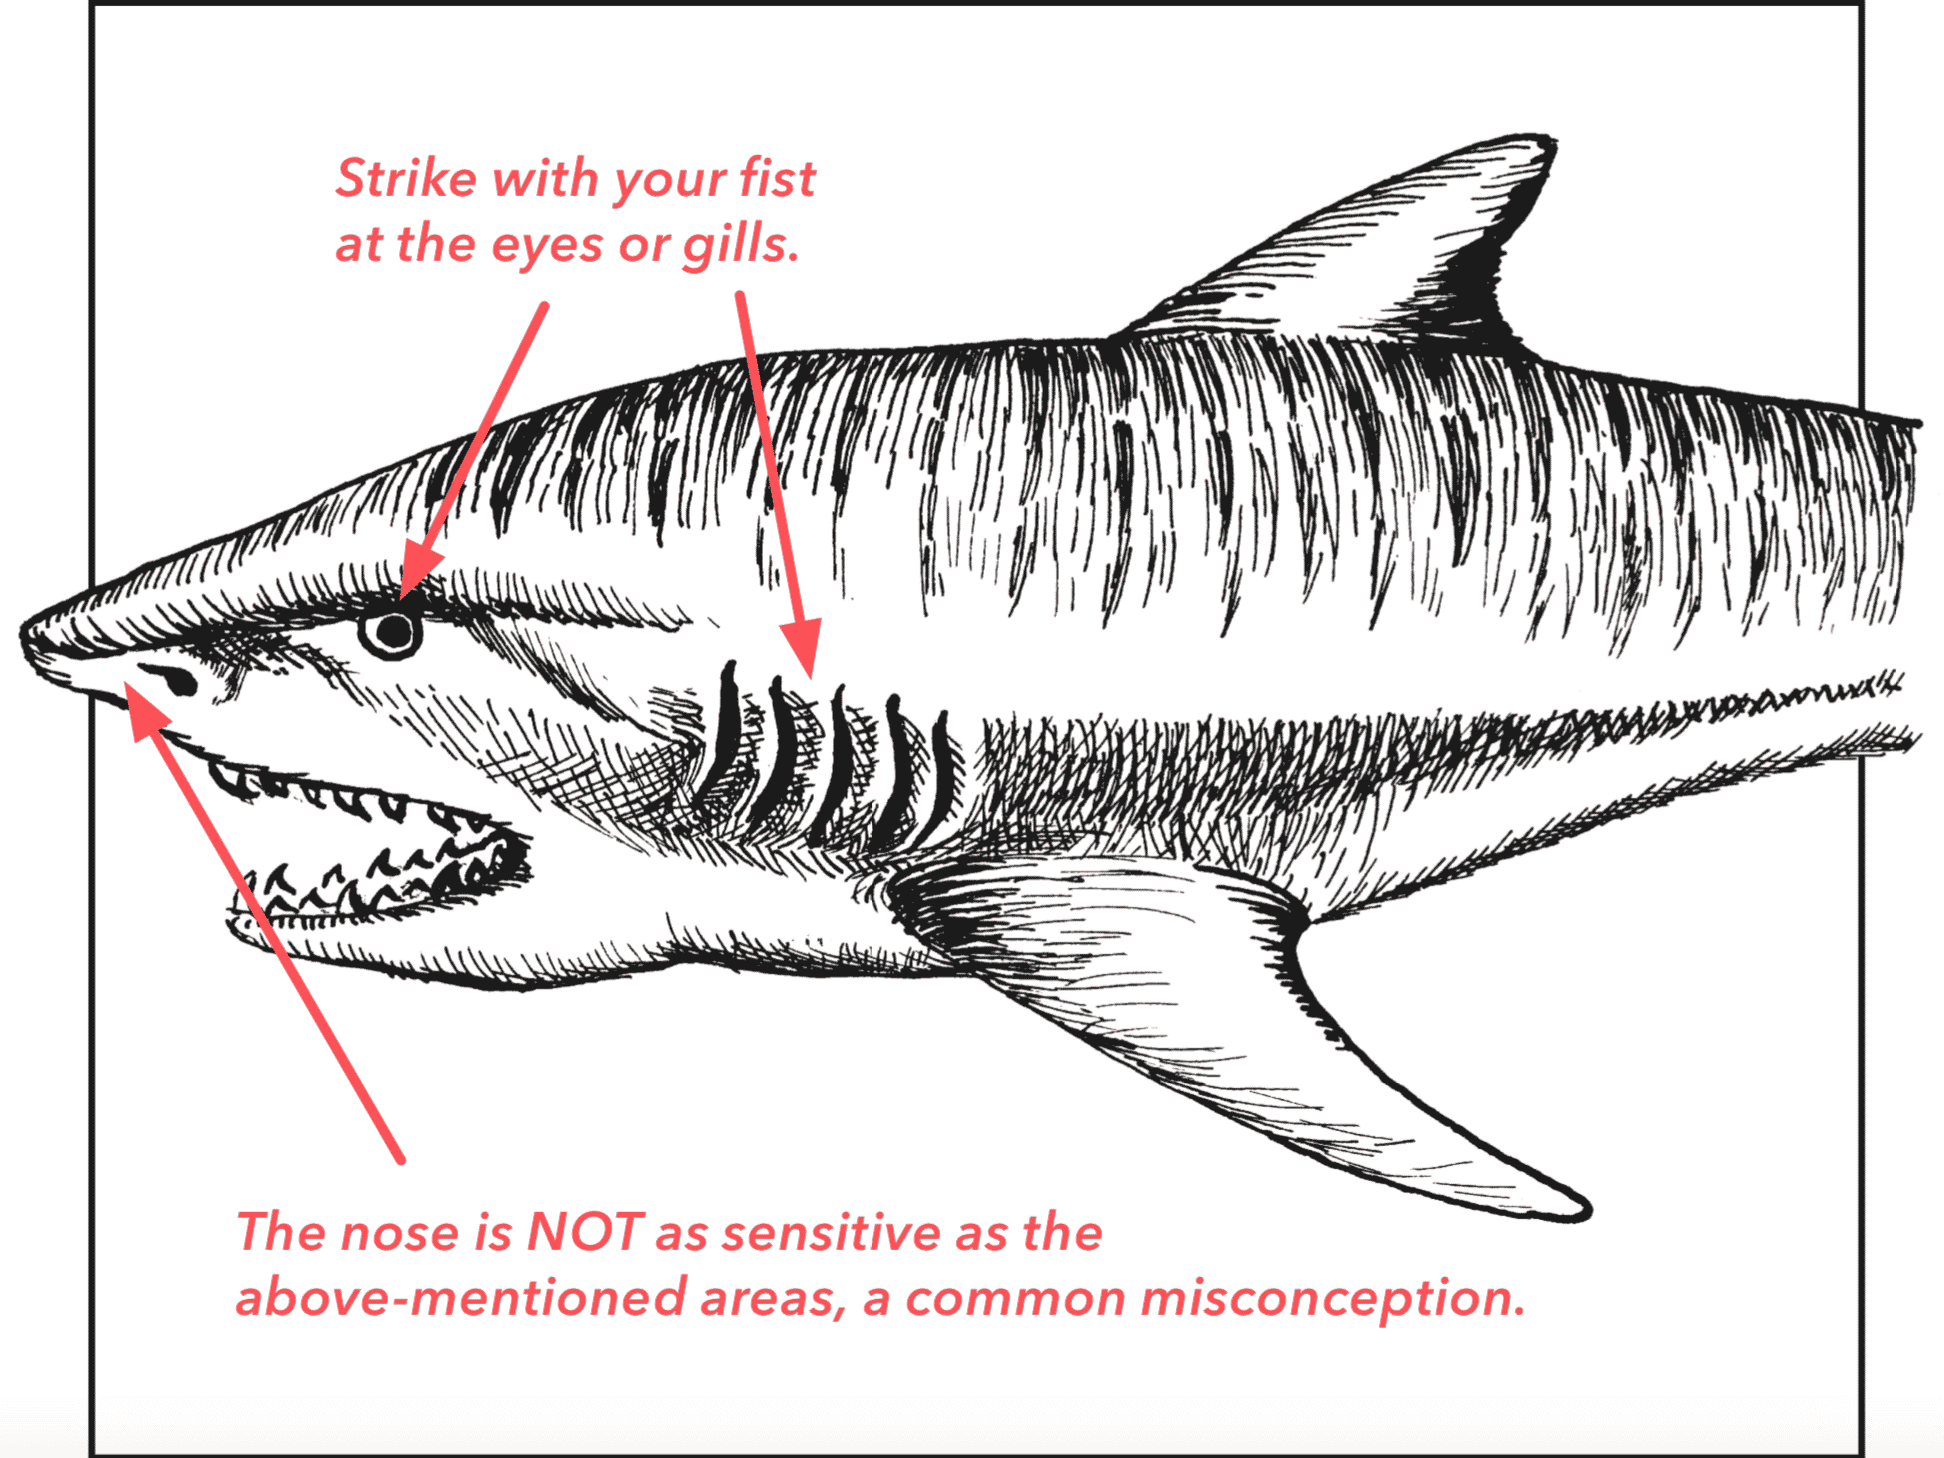 Do shark attacks hurt?